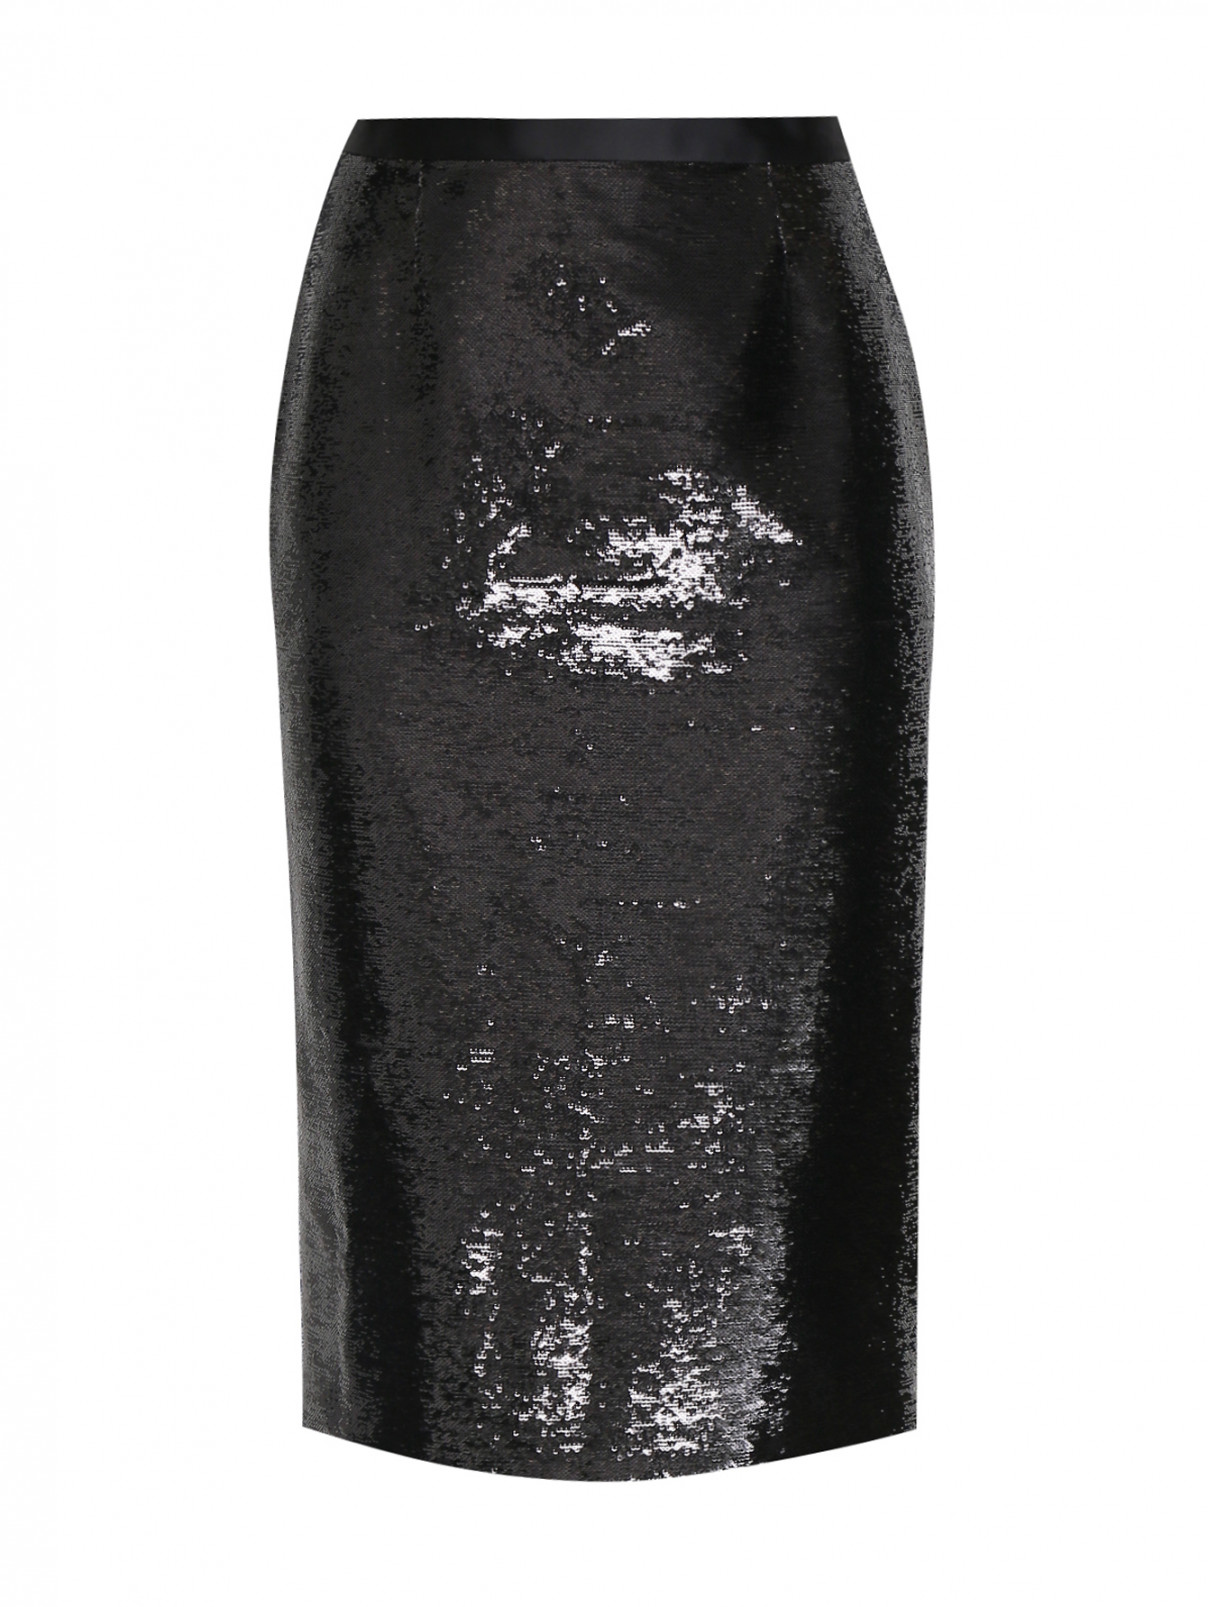 Юбка прямого кроя, декорированная пайетками Zuhair Murad  –  Общий вид  – Цвет:  Черный